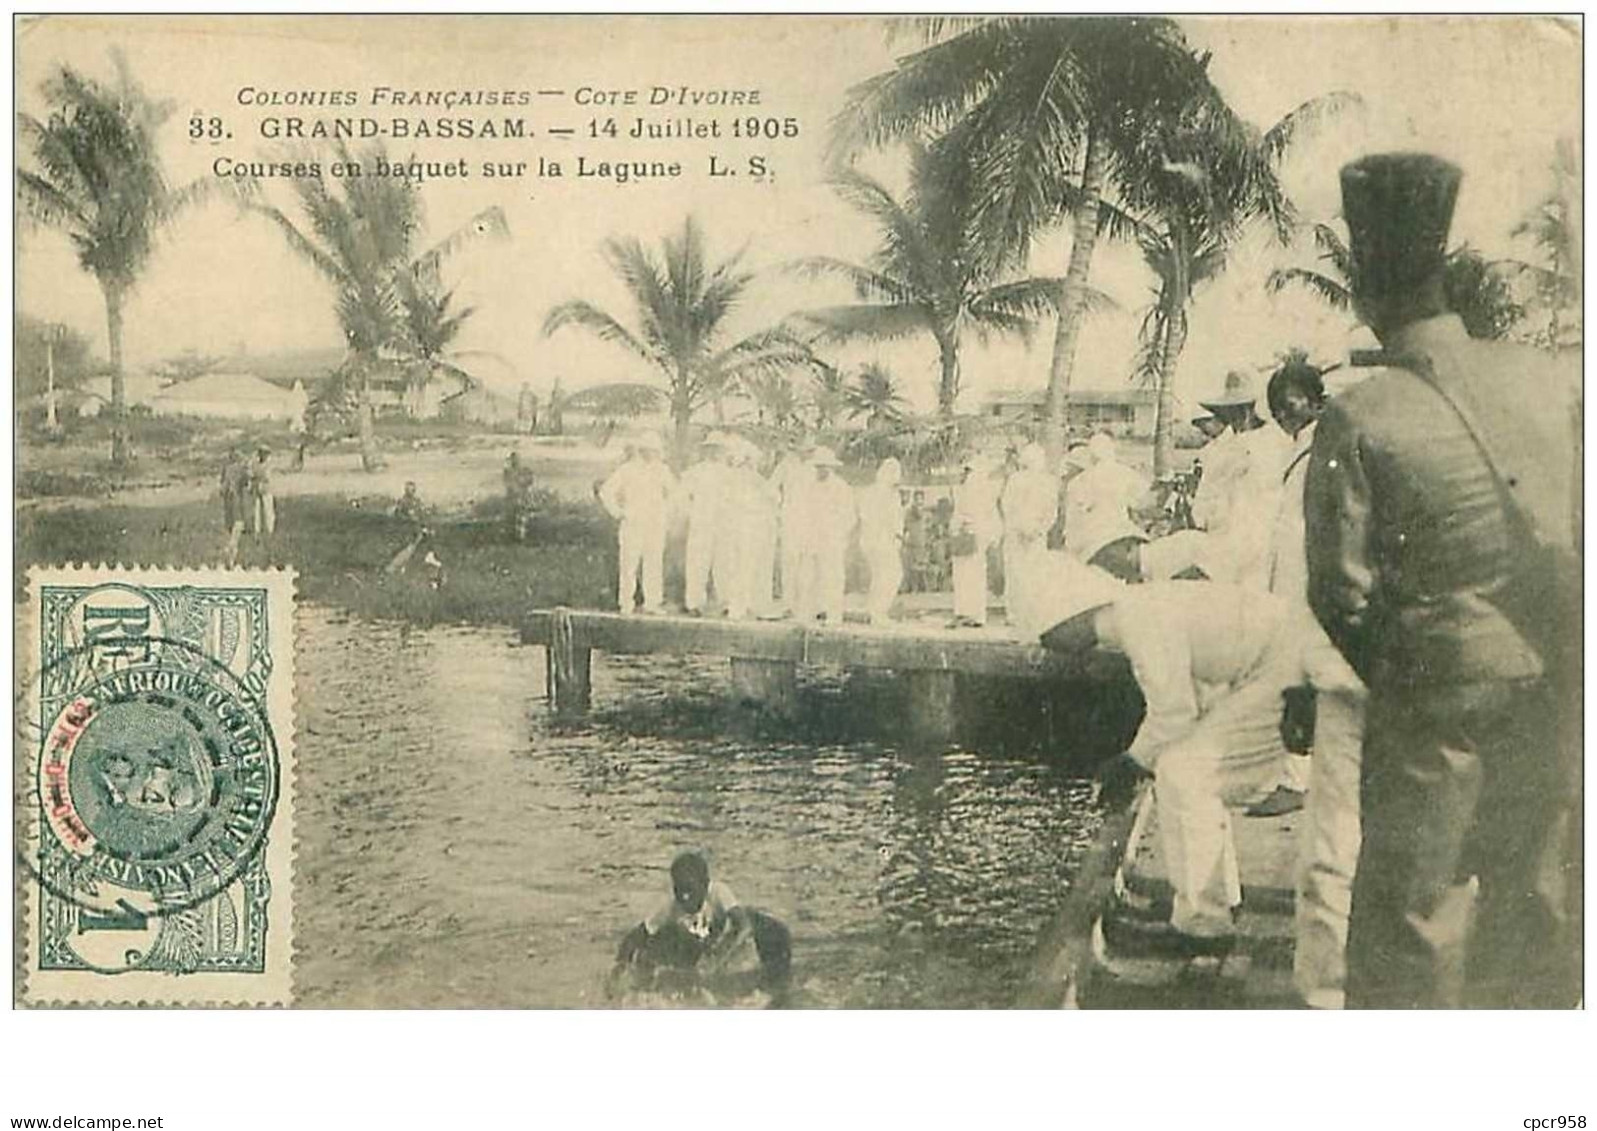 COTE D'IVOIRE.n°31154.GRAND BASSAM.14 JUILLET 1905.COURSES EN BAQUET SUR LA LAGUNE - Côte-d'Ivoire